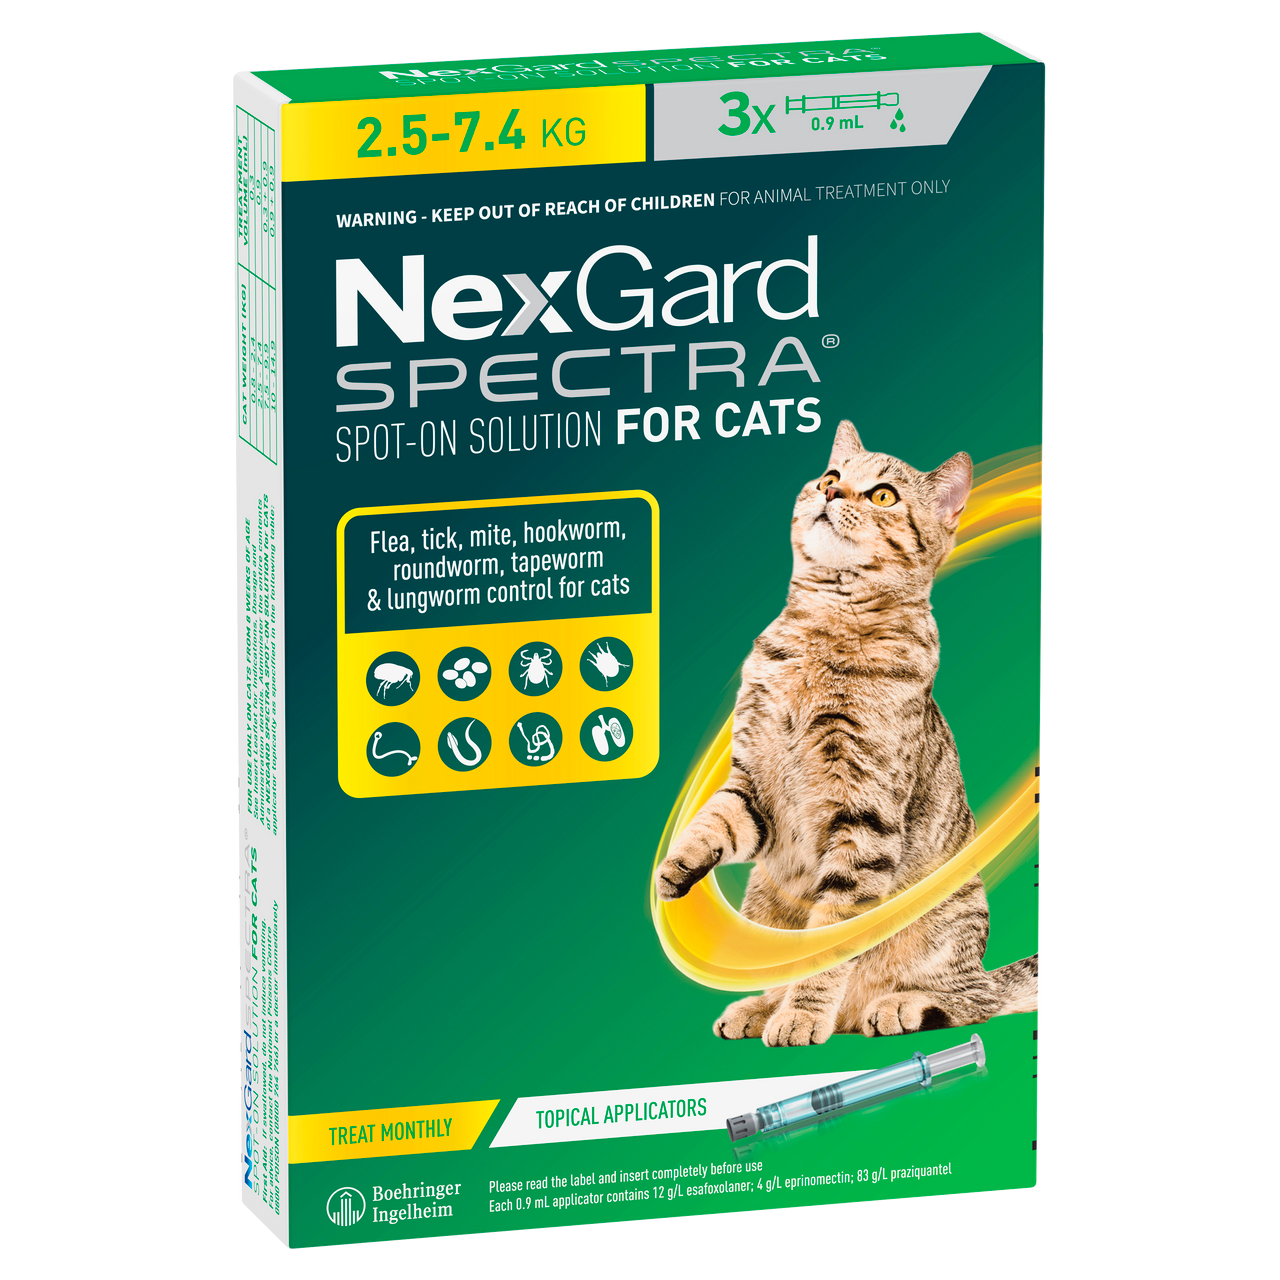 Nexgard Spectra Spot-on for cats